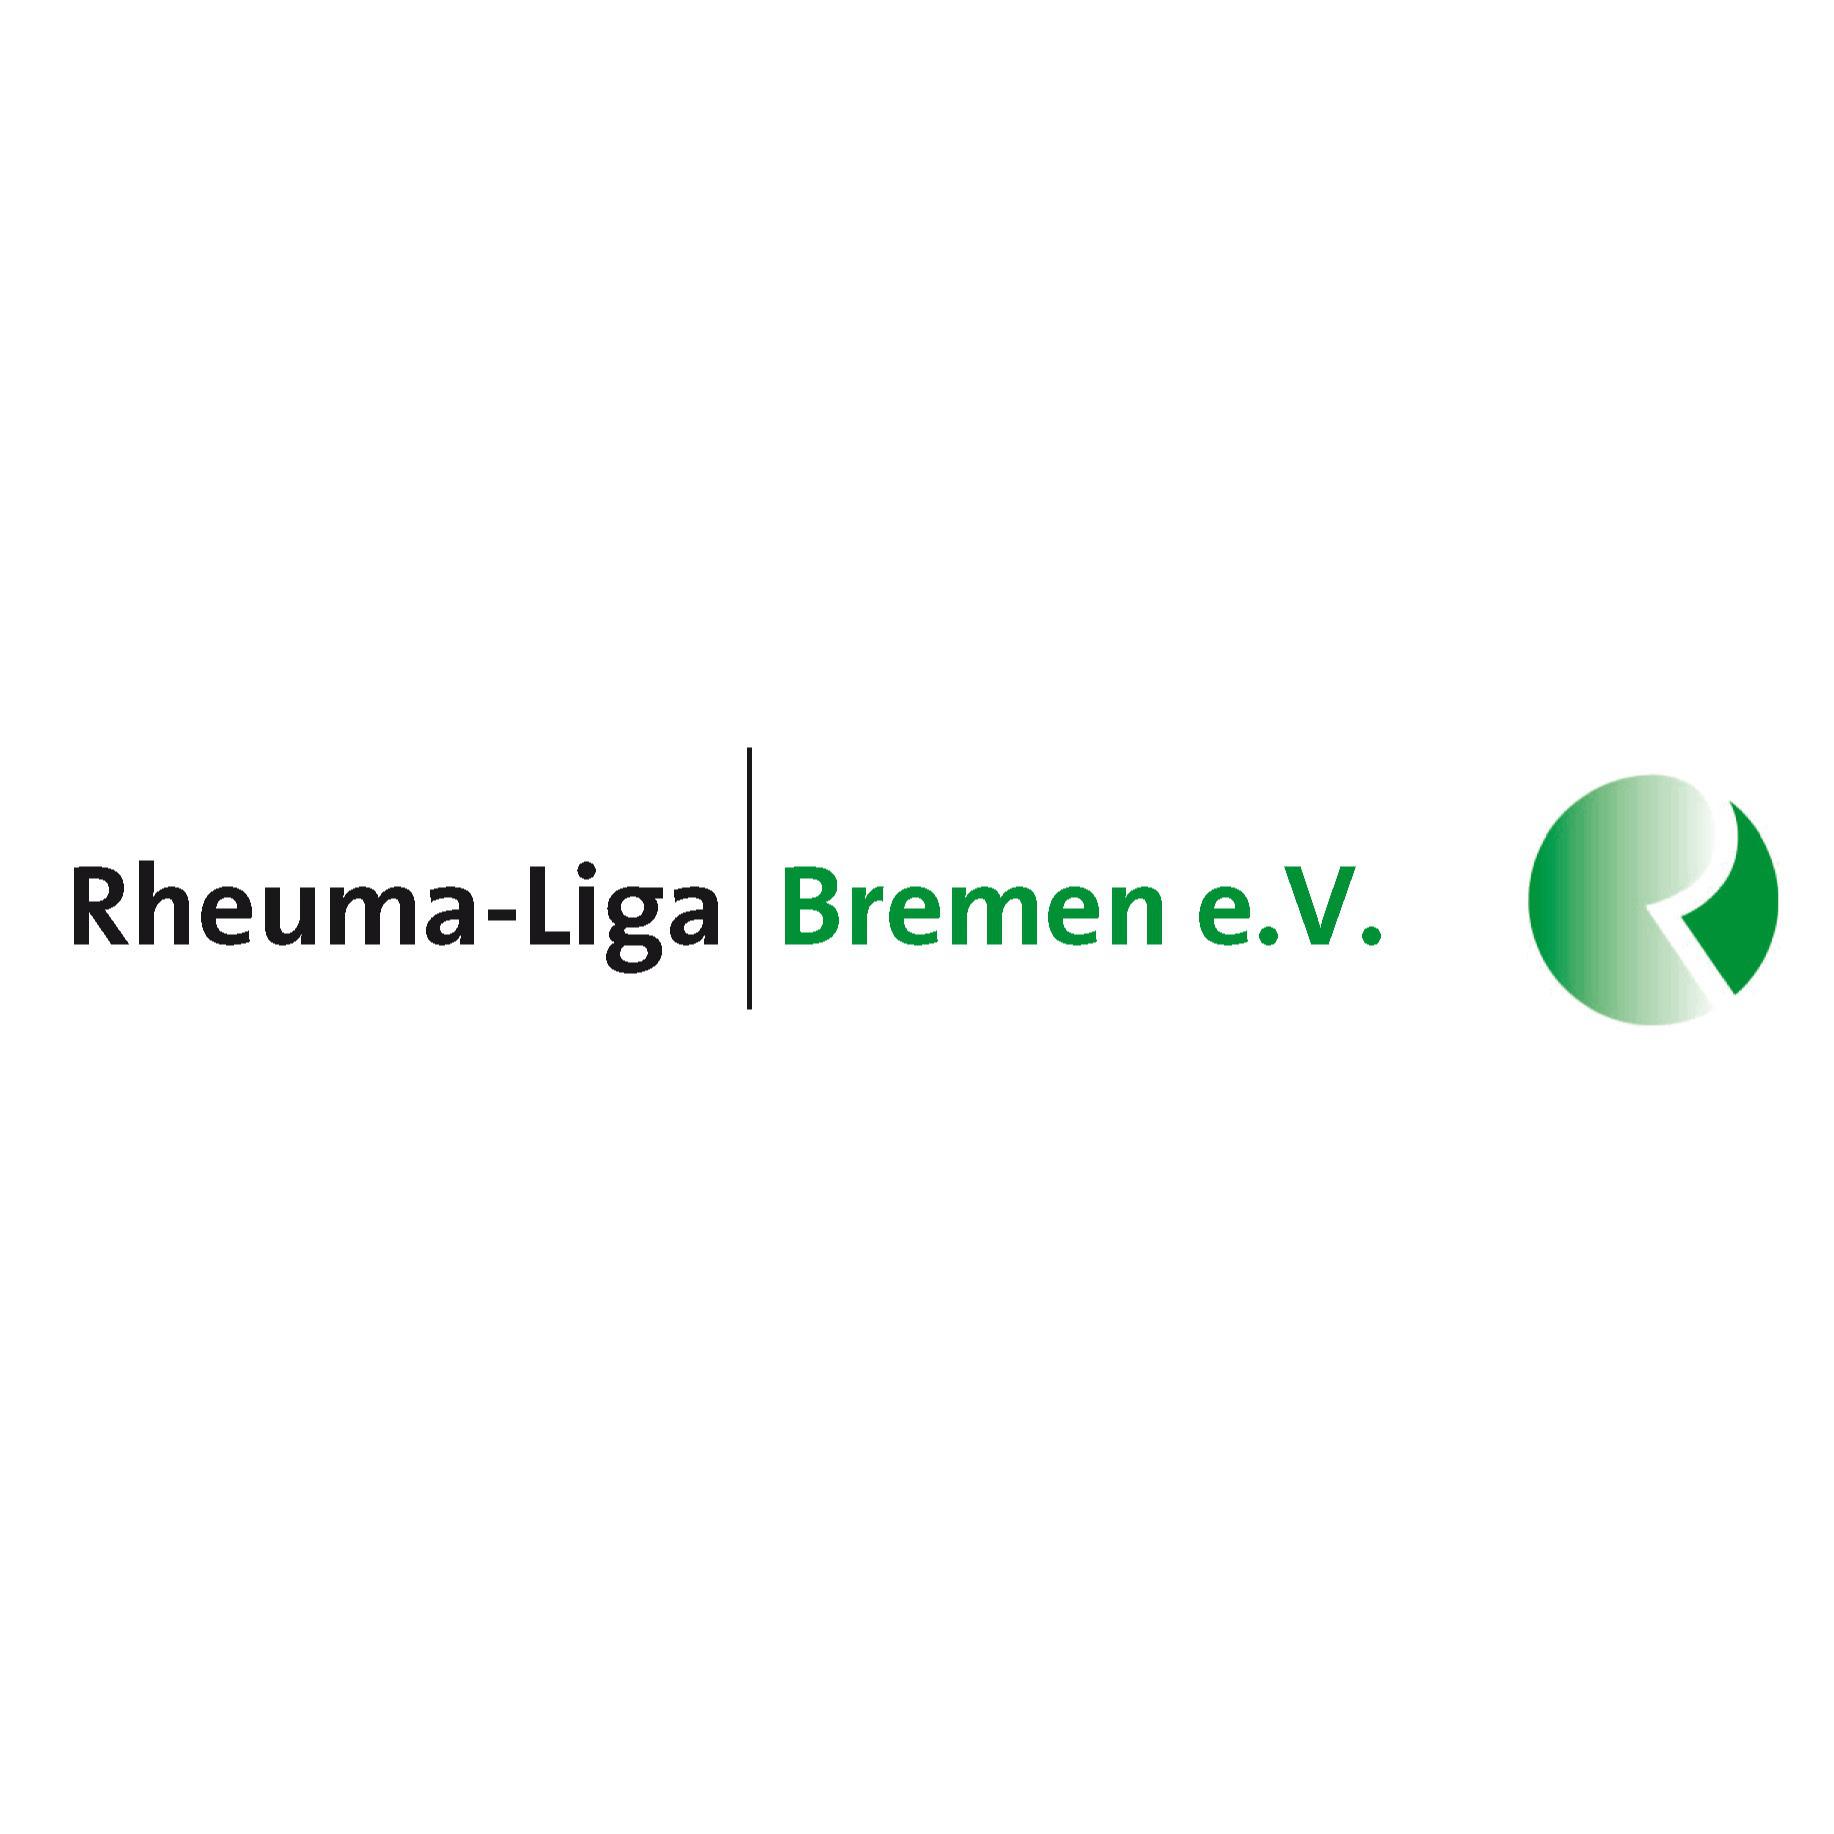 Rheuma-Liga Bremen e. V.  